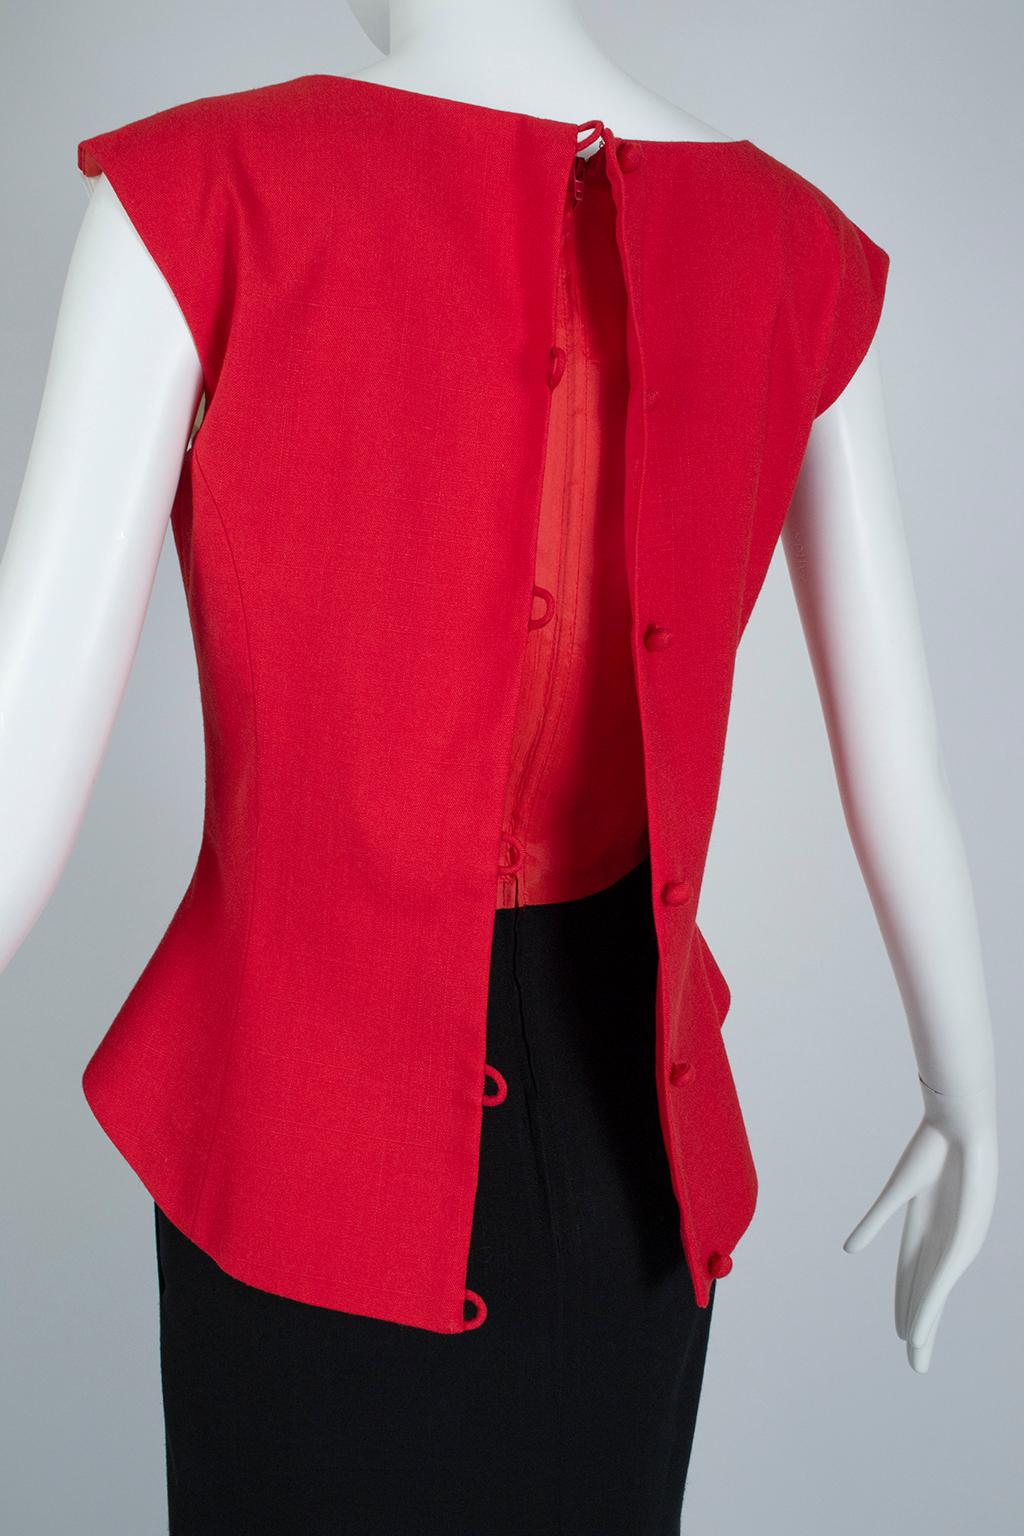 Luis Estévez Red, Black and White Waist-Cincher Peplum Sheath Dress - M-L, 1950s For Sale 2